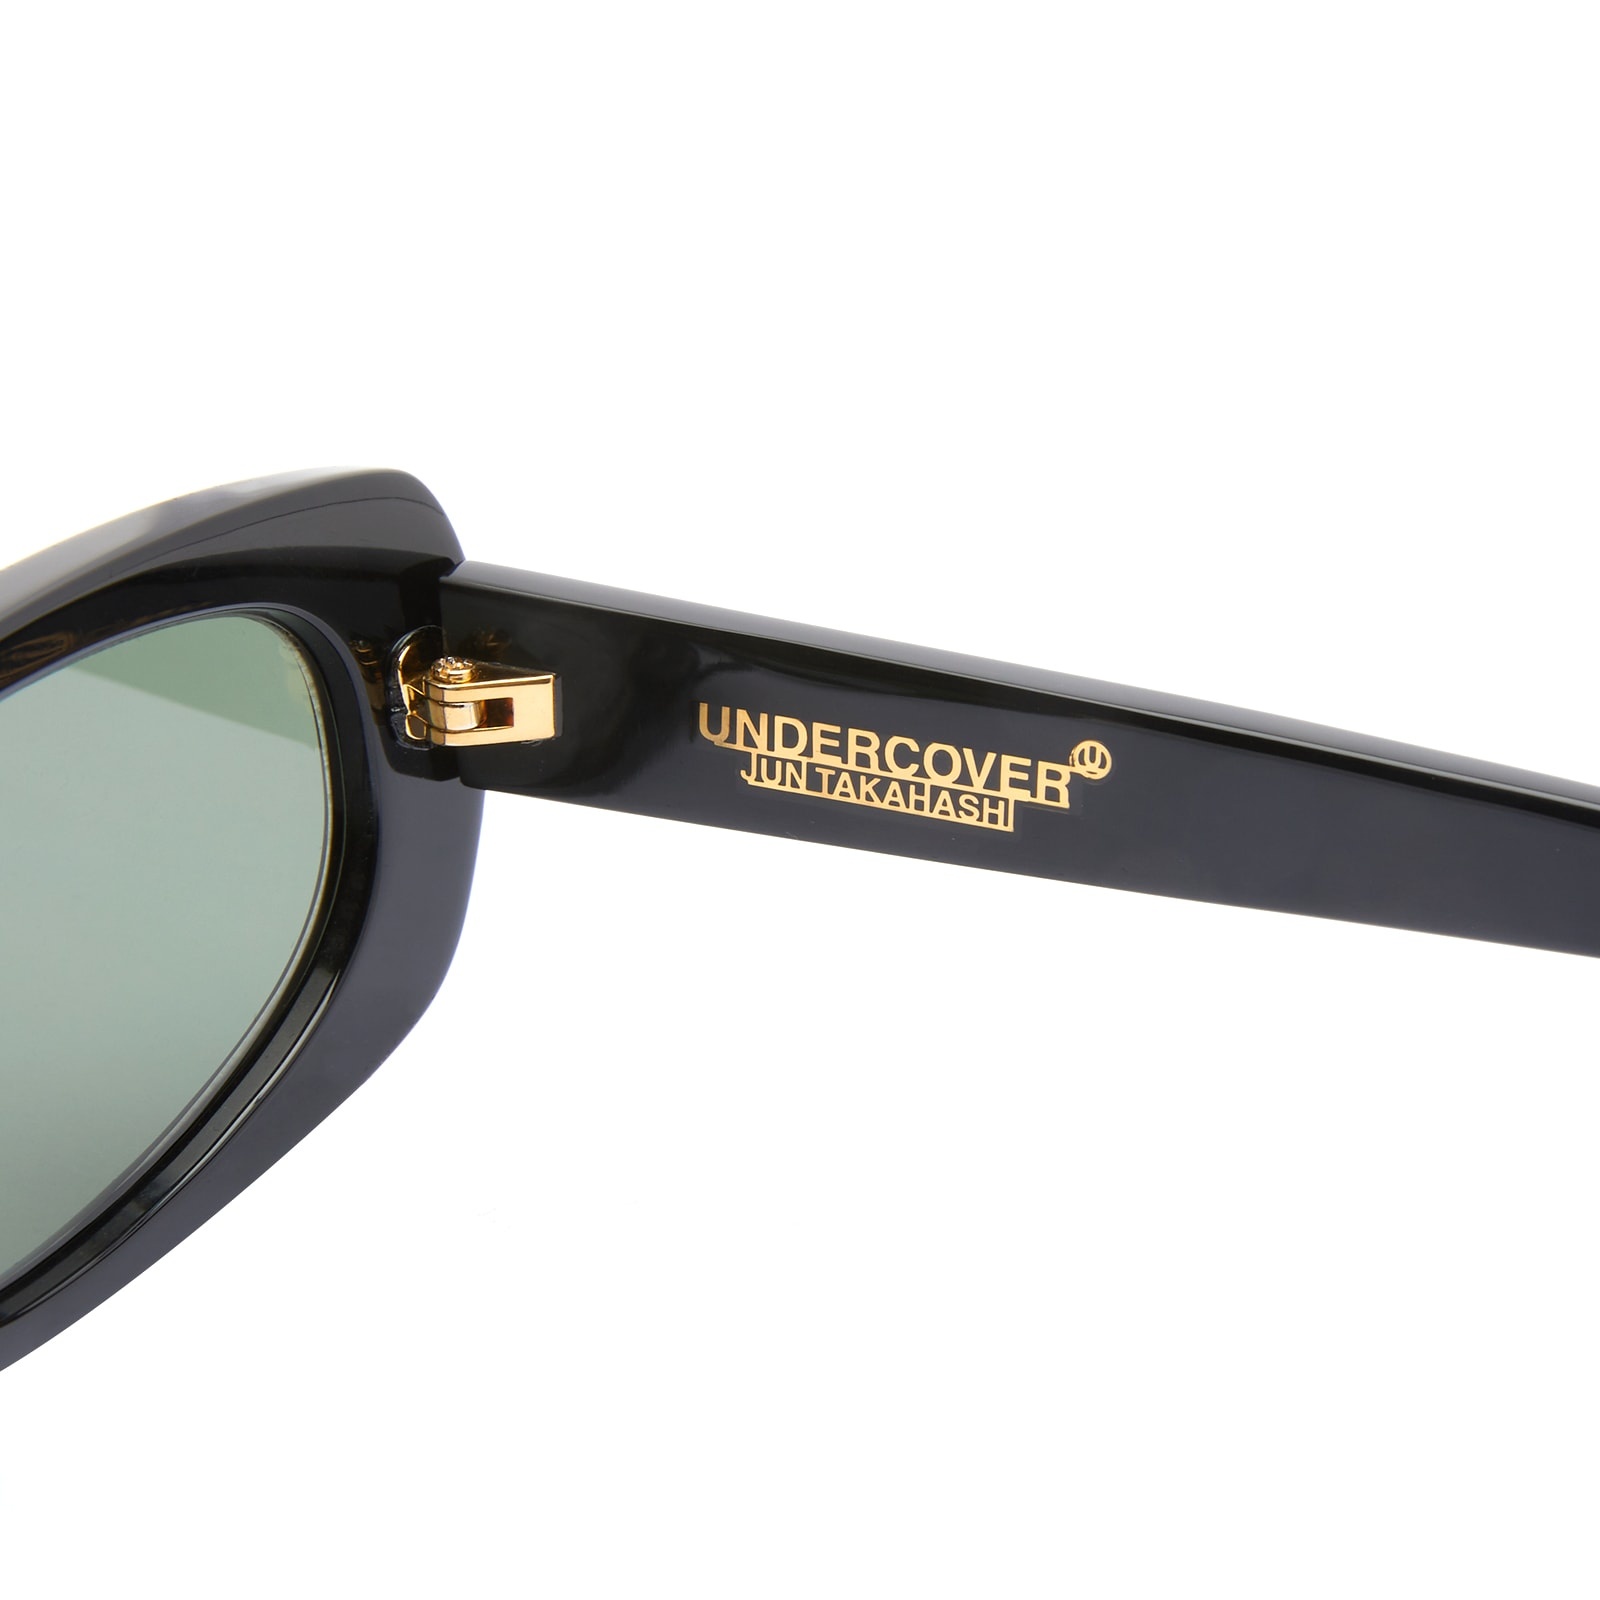 Undercover Sunglasses - 4